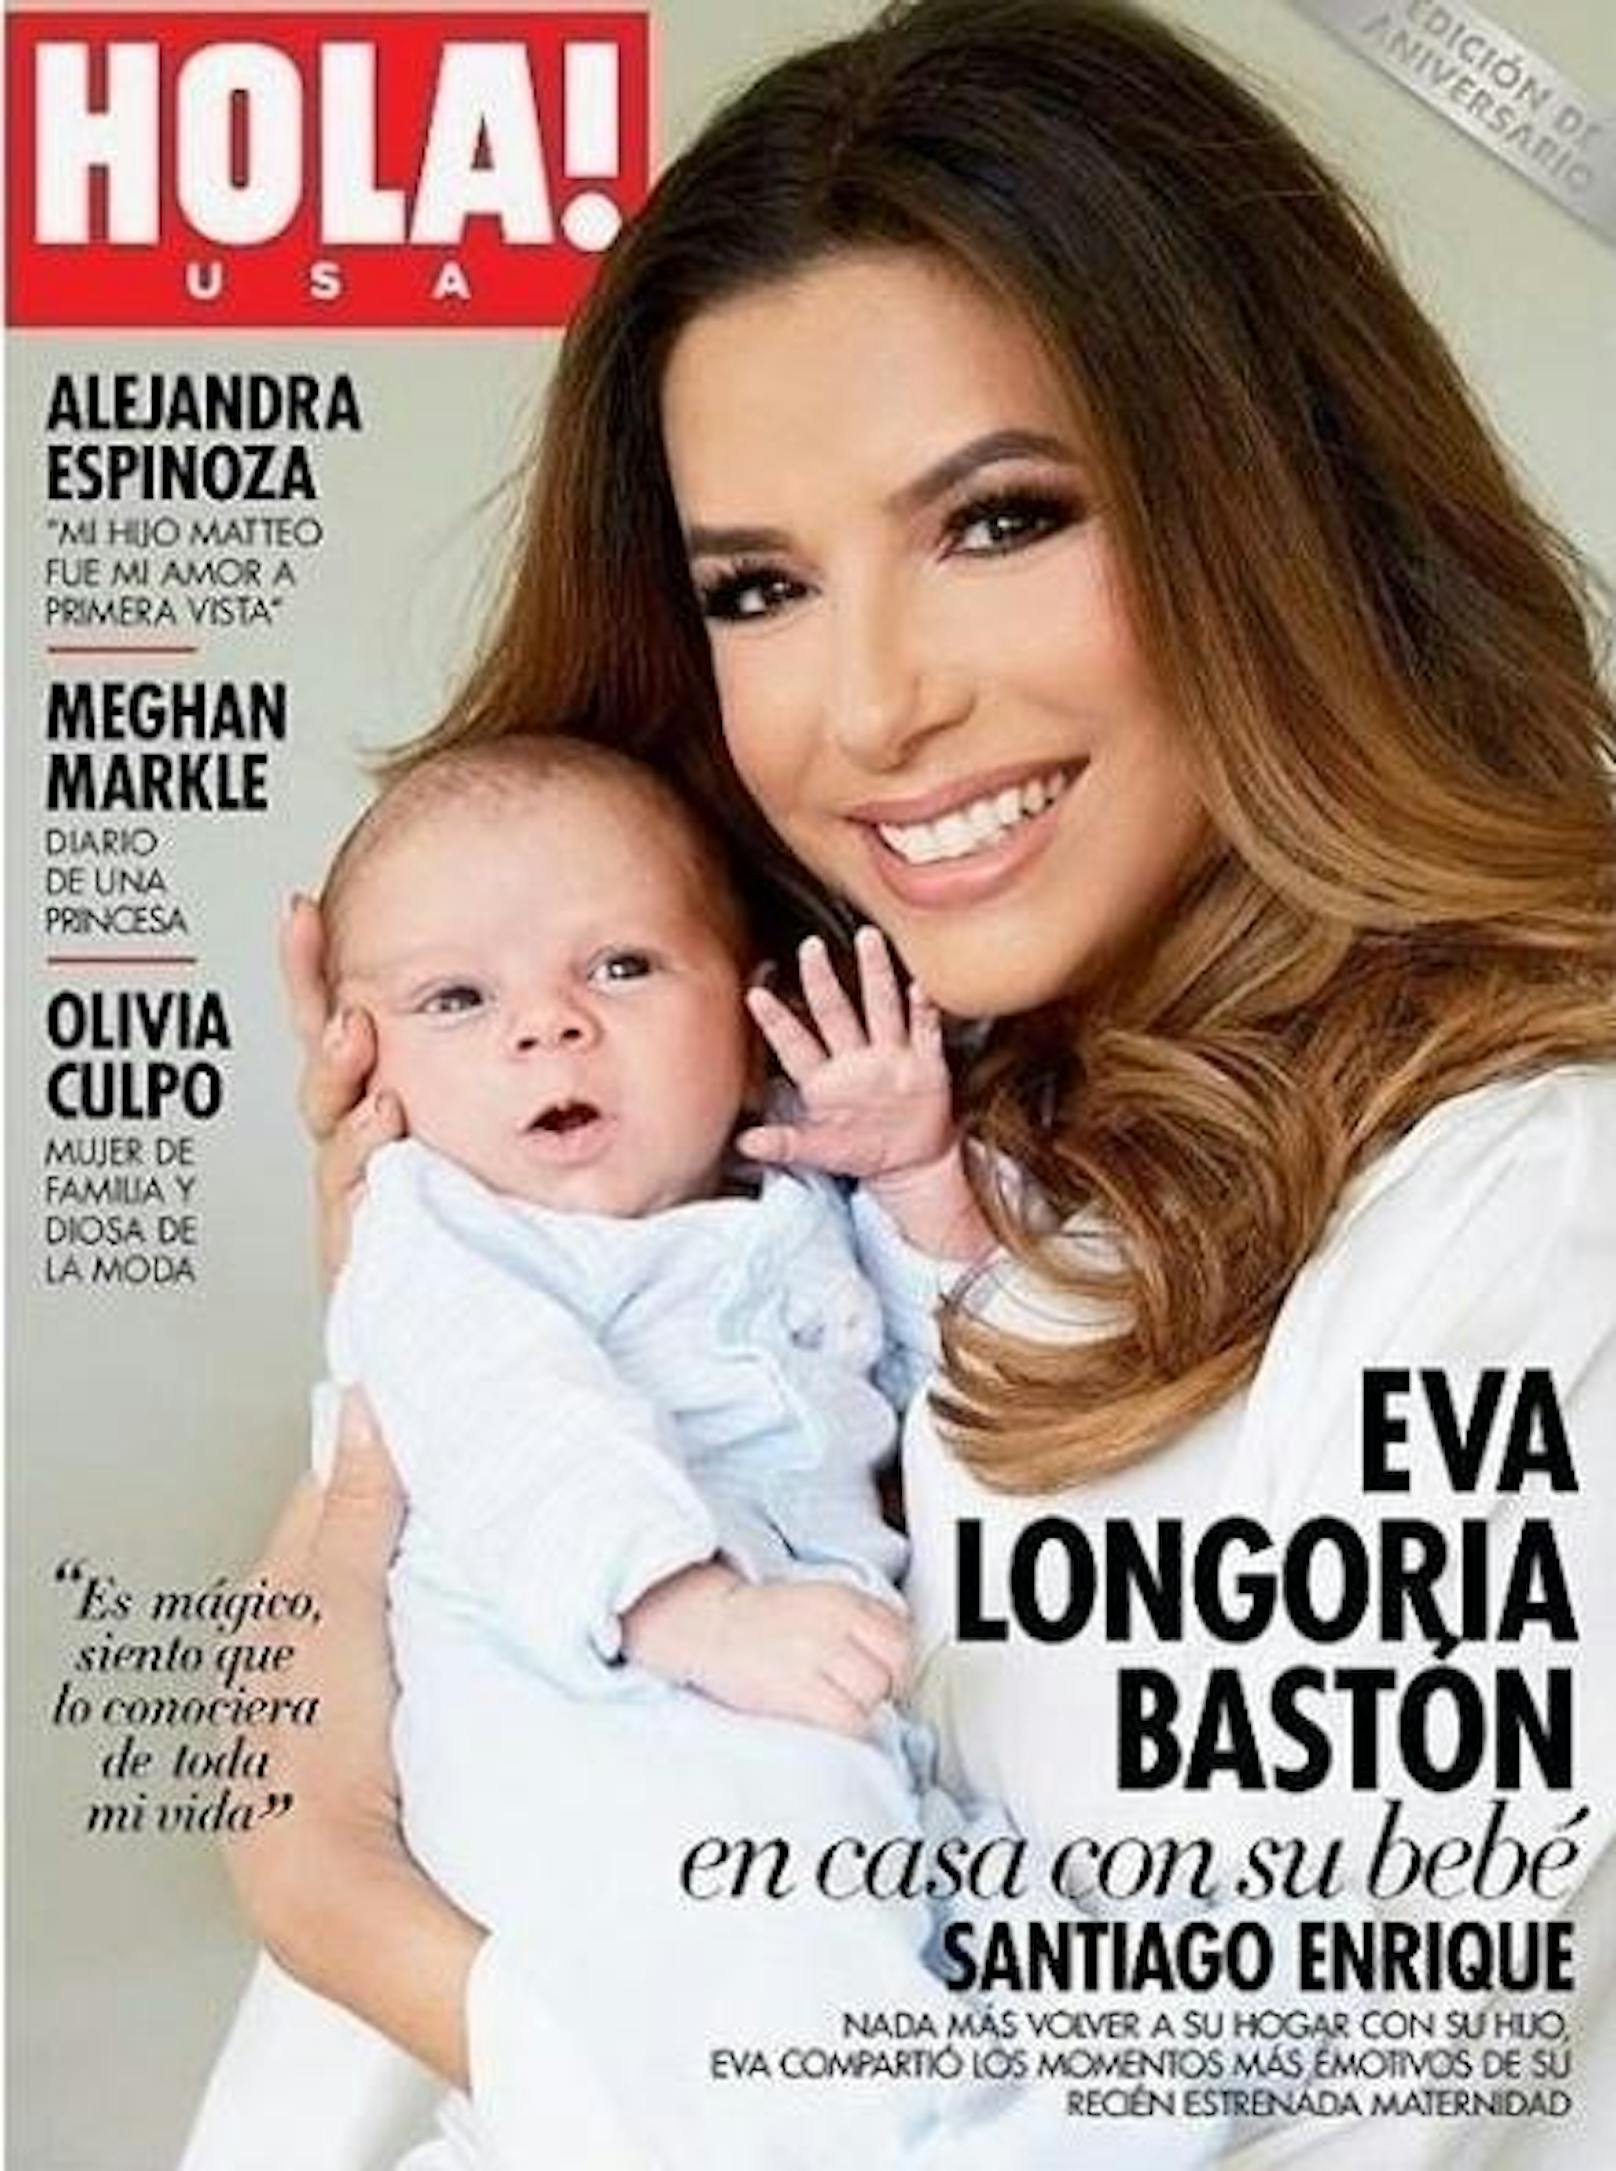 01.08.2018: Eva Longoria zeigt im "Hola"-Magazin erstmals das Gesicht ihres rund sechs Wochen alten Sohnes Santiago Enrique Baston. Der kleine Mann winkt ganz süß in die Kamera.